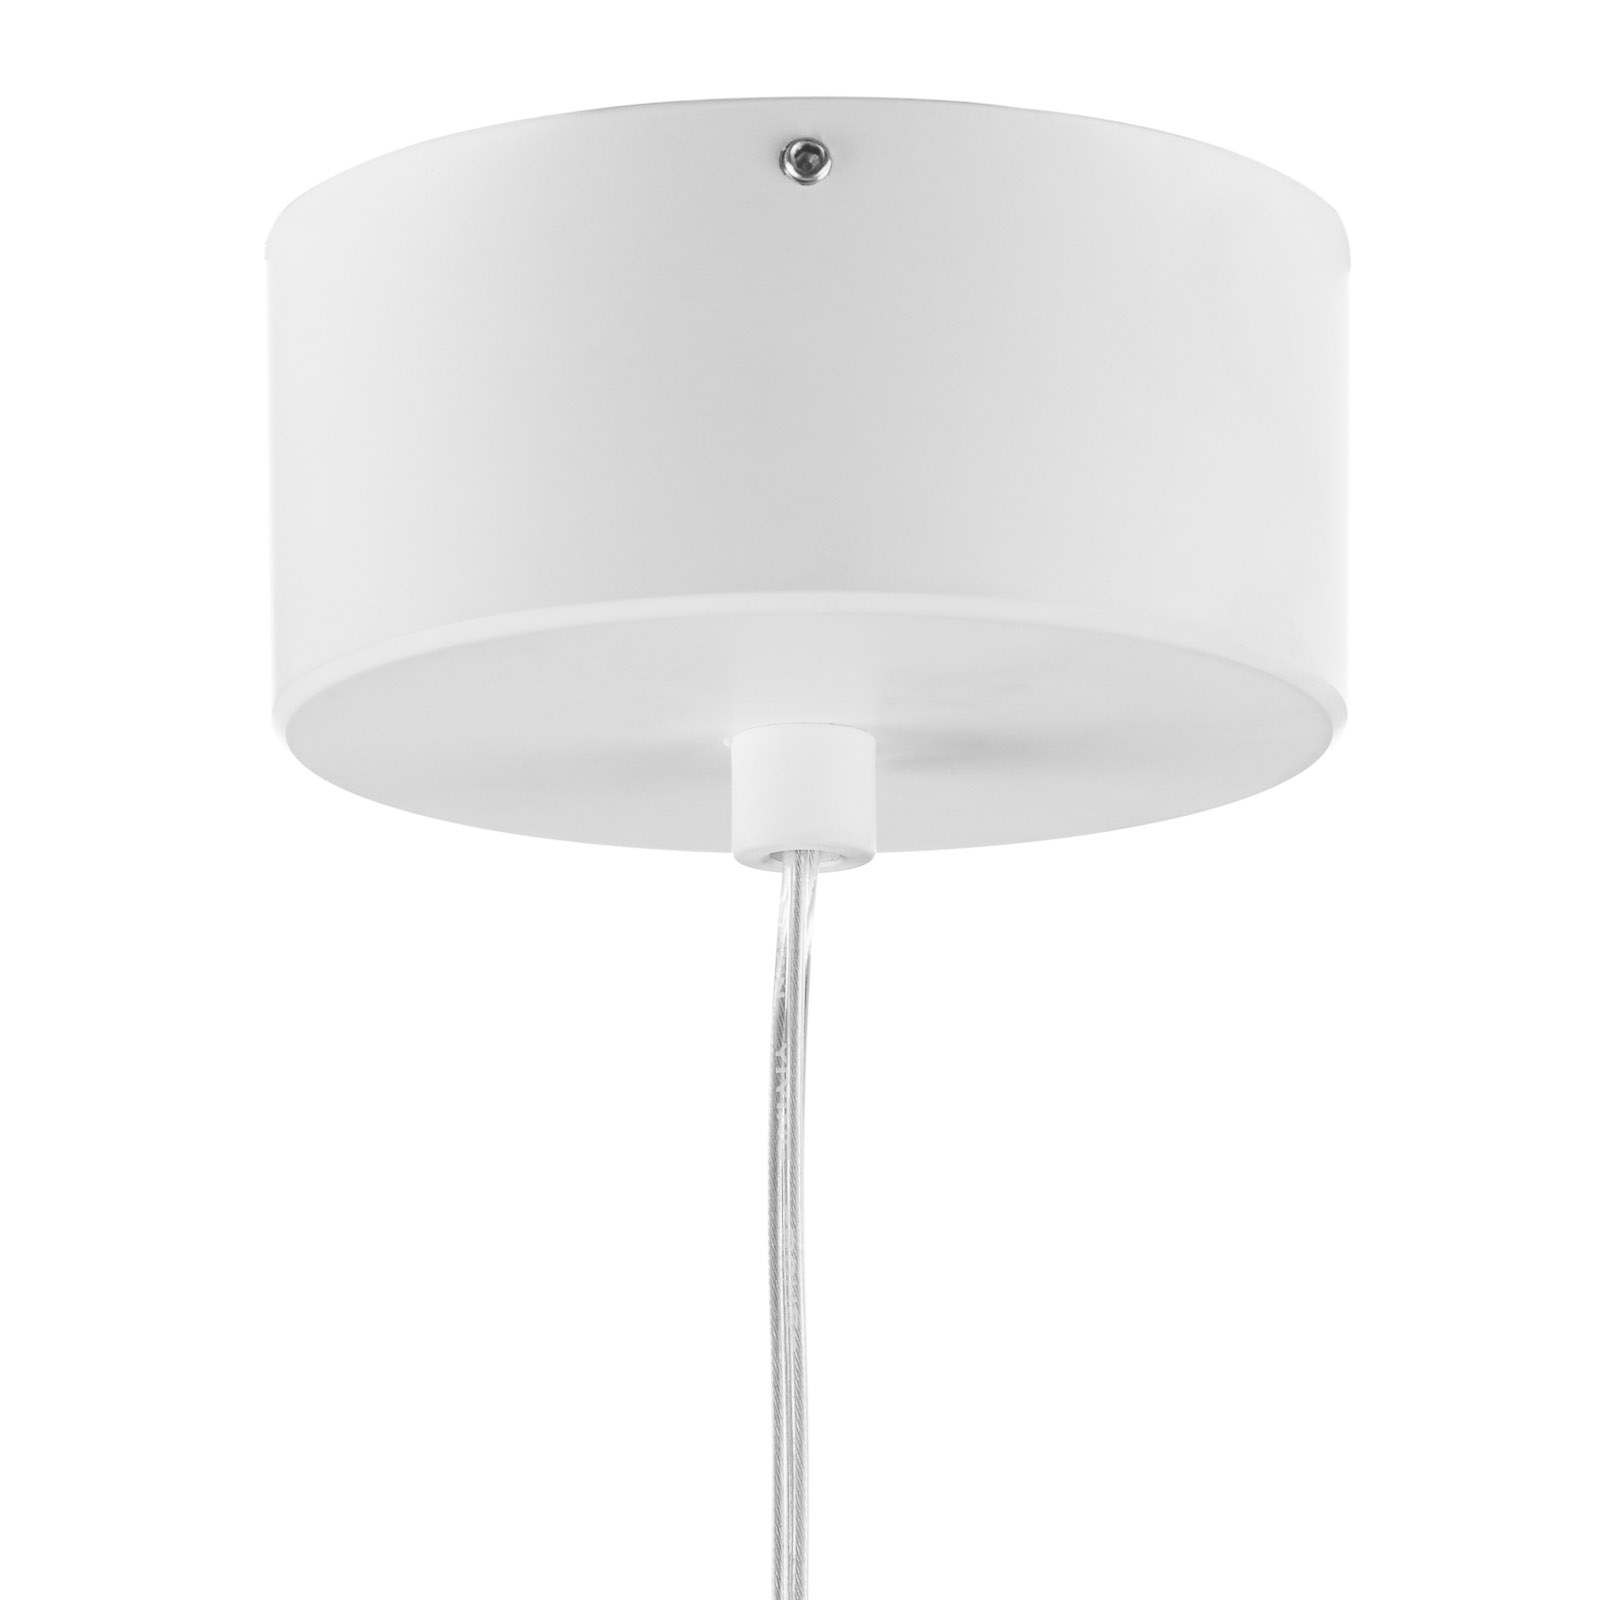 Bendis - slim LED hanging light in white